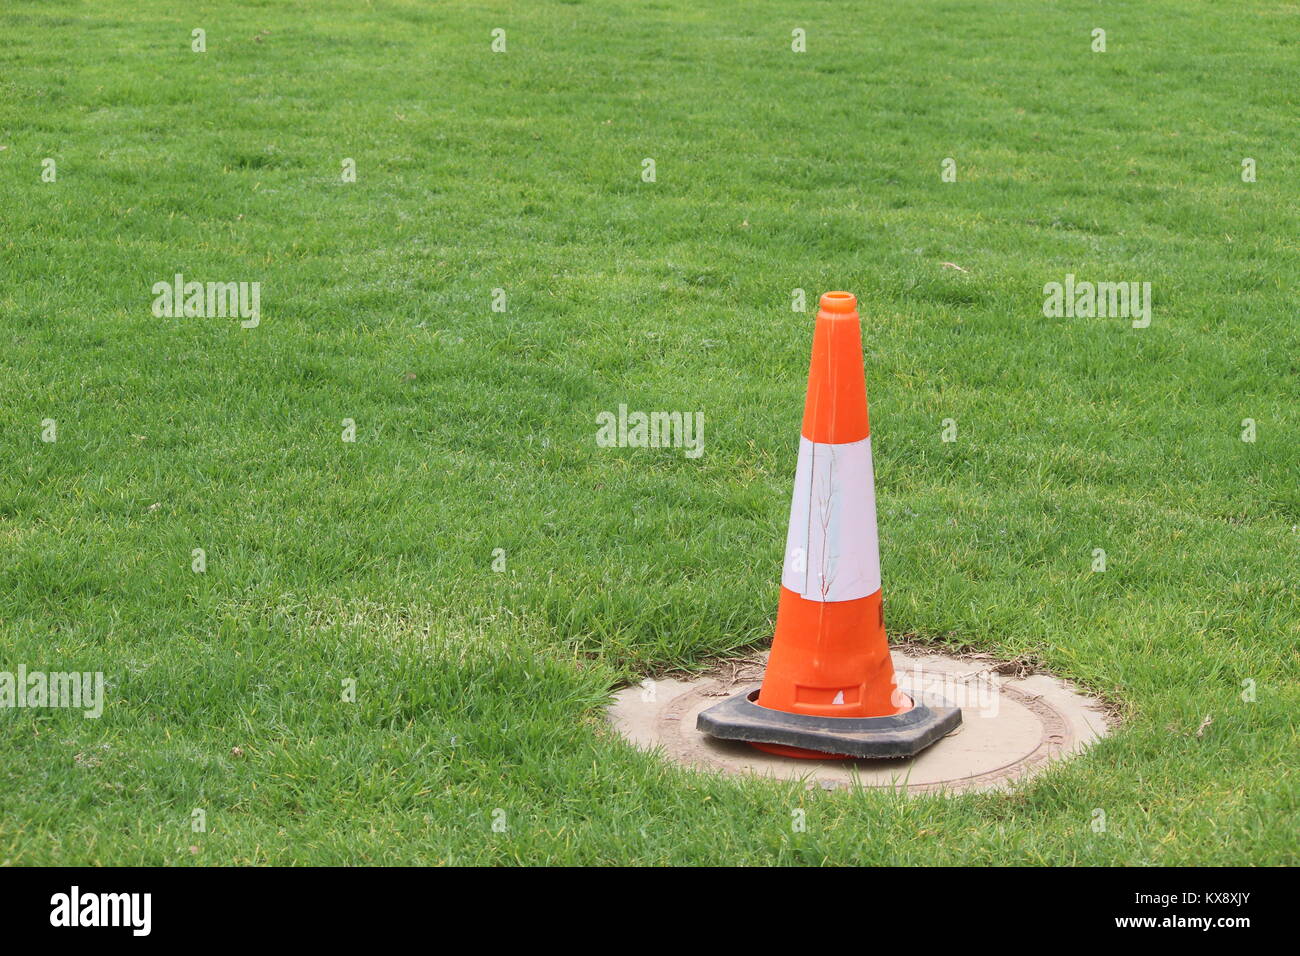 Traffic cone in grassy field Stock Photo